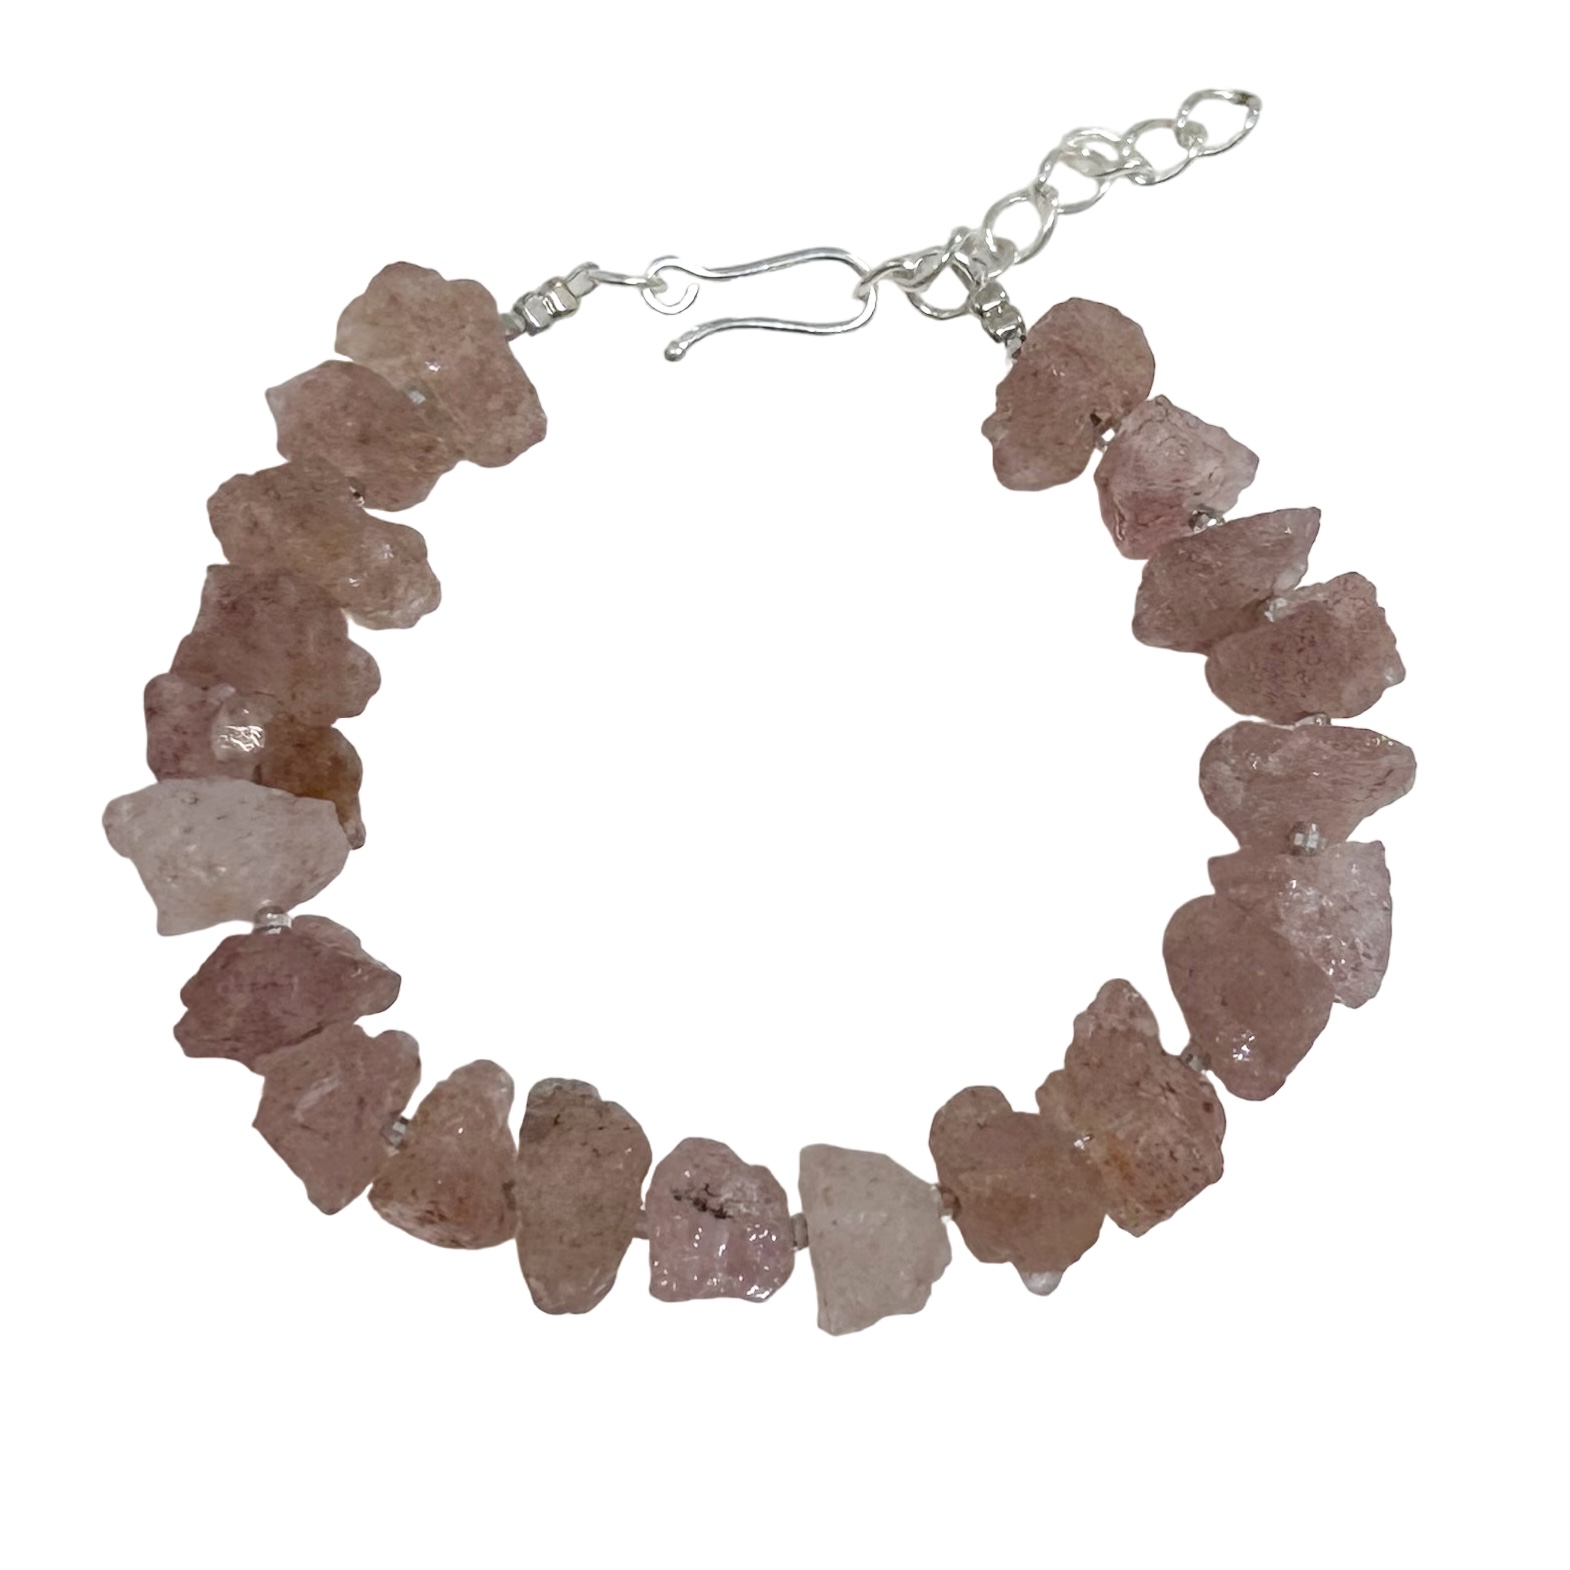 pink stone bracelet